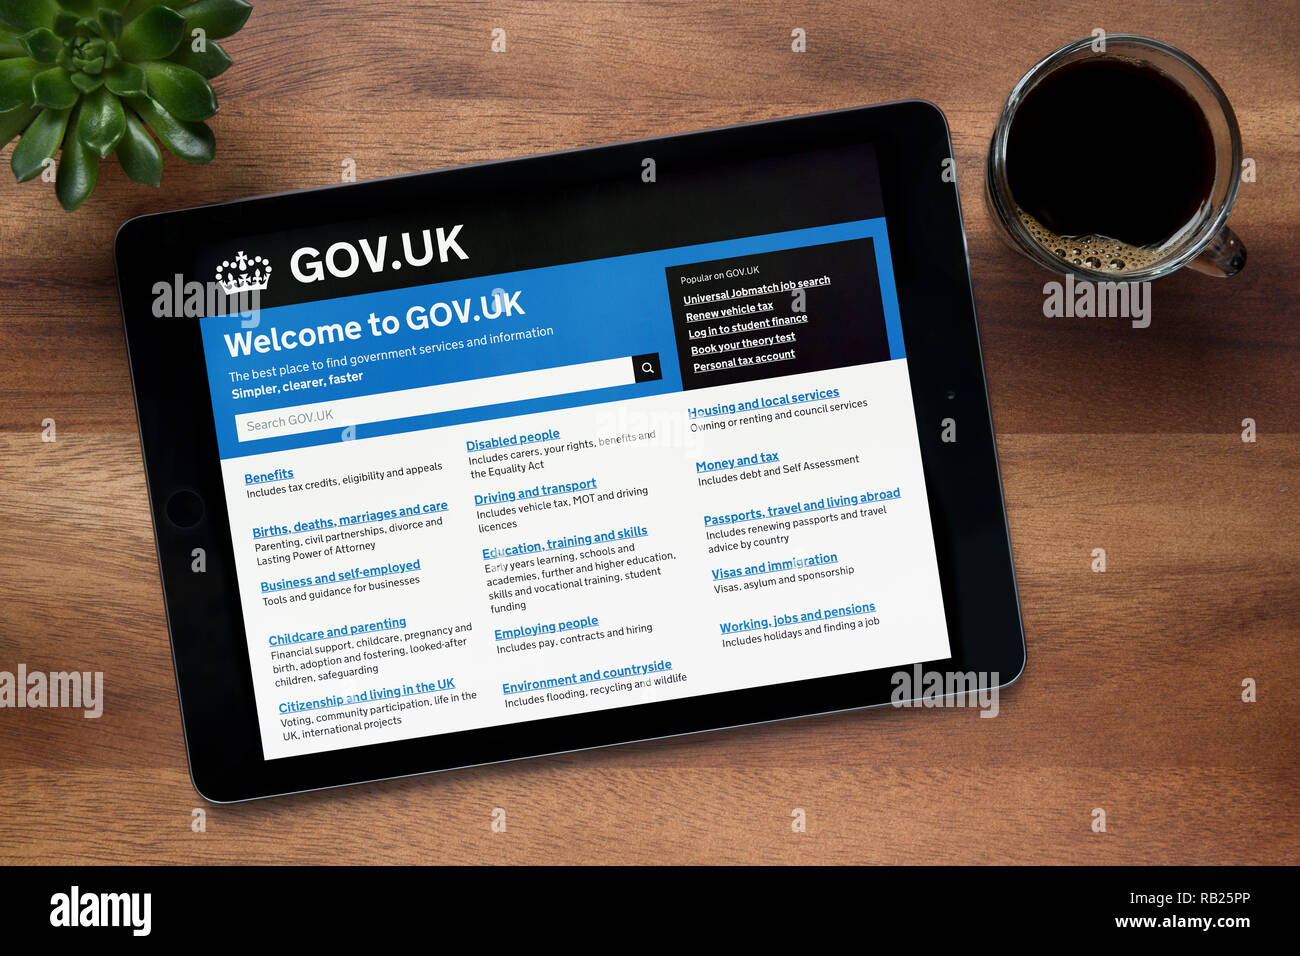 Die Website der britischen Regierung ist, auf einem iPad Tablet gesehen, auf einer hölzernen Tisch zusammen mit einem Espresso und einem Haus Anlage (nur redaktionelle Nutzung). Stockfoto